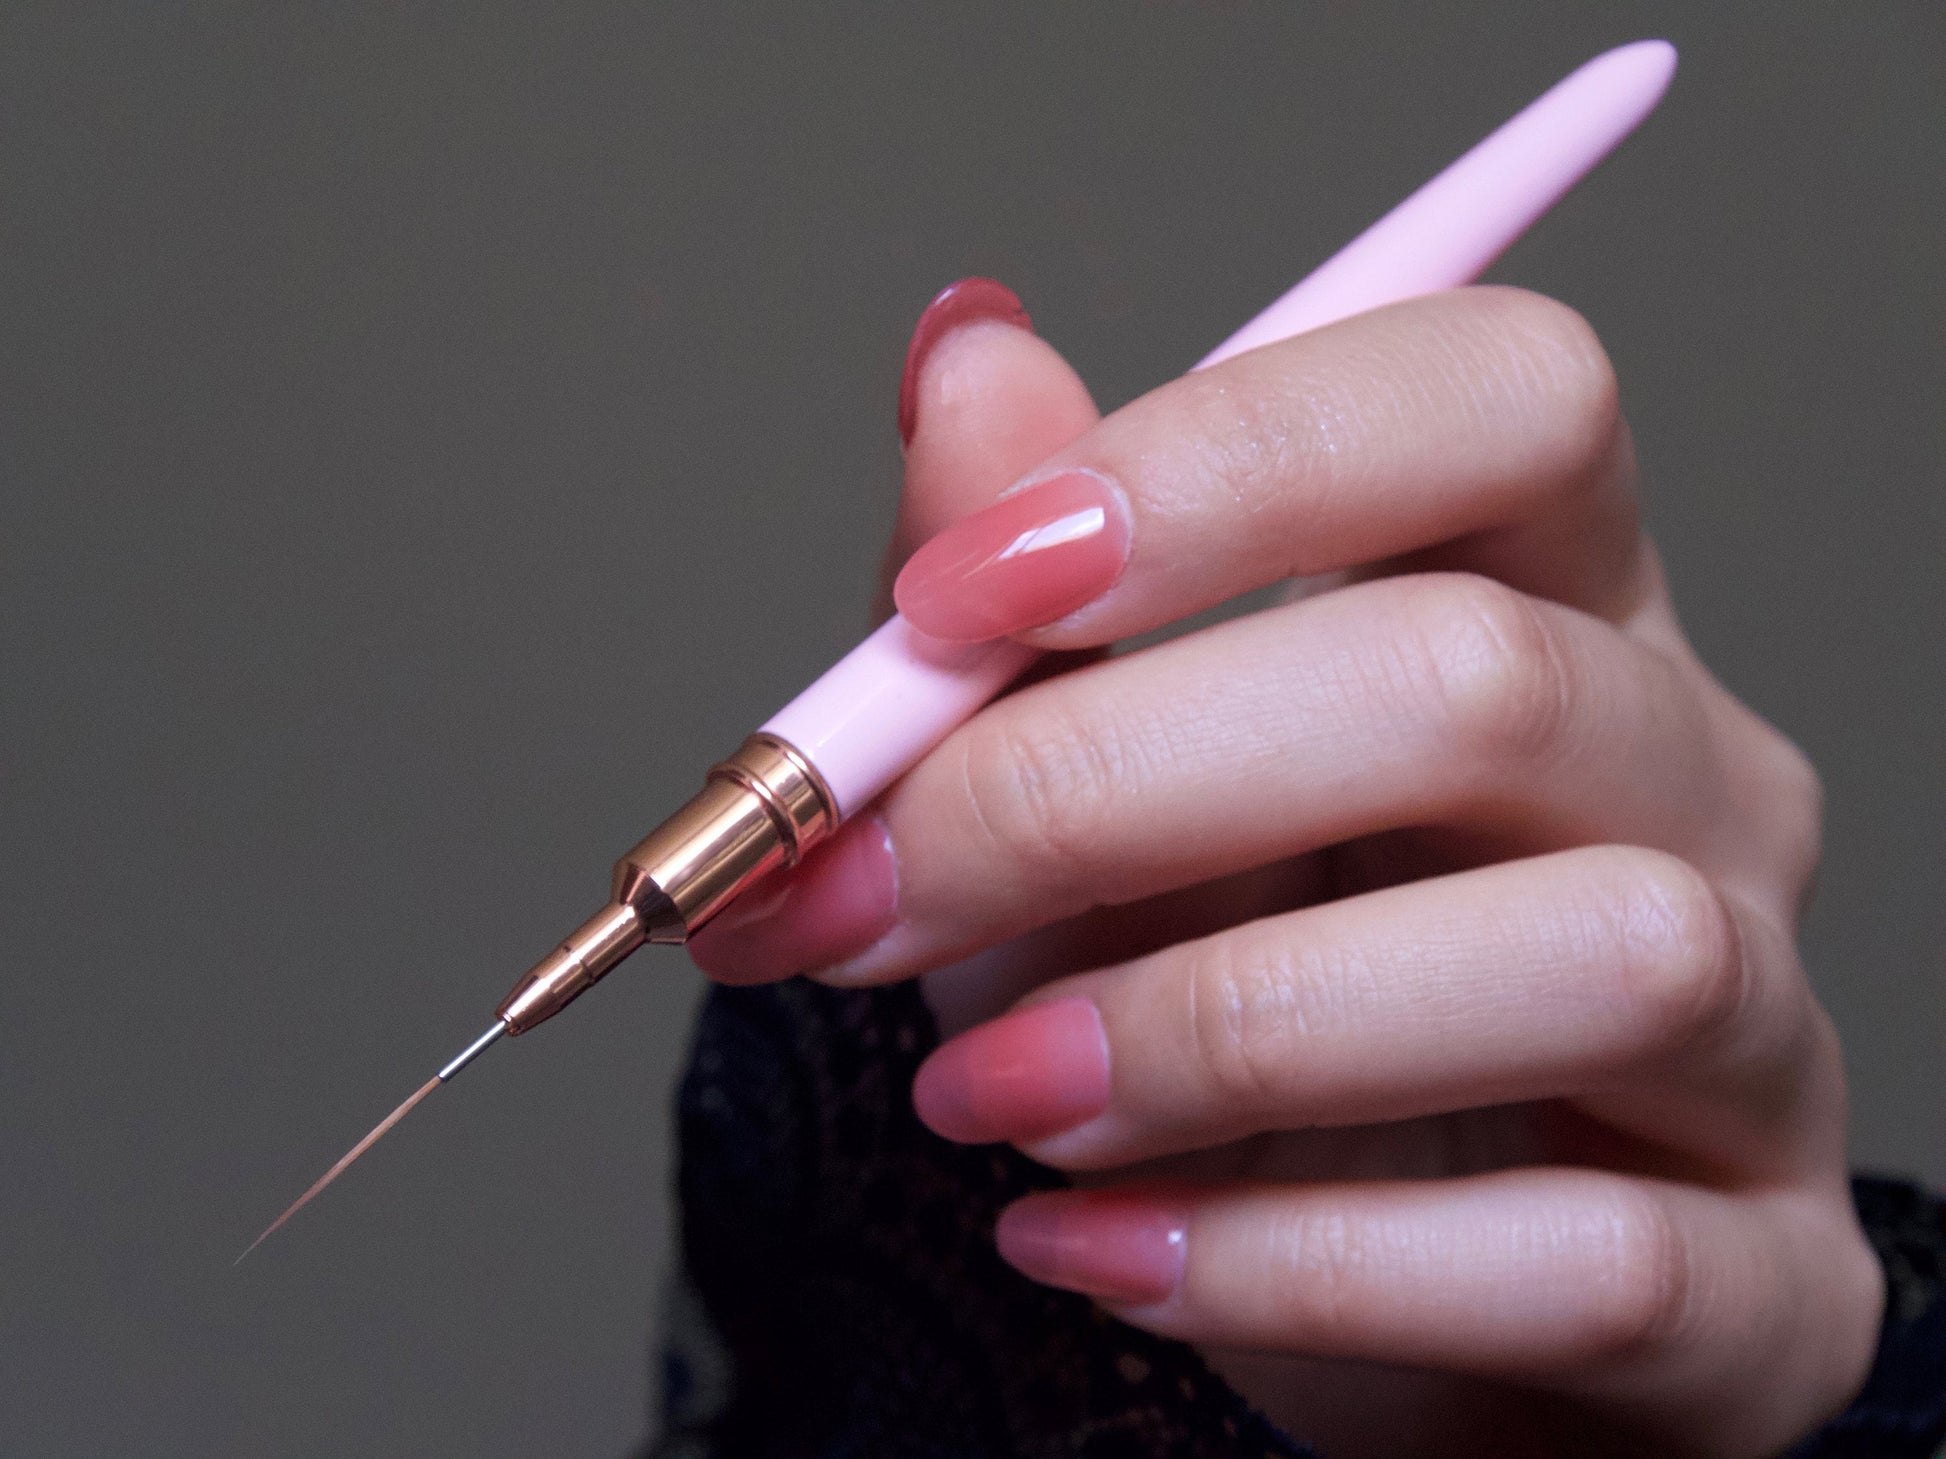 20mm Pink Nail Brush Detailing Striping Nail Art Pen/ liner Brush Painting Brushes/ Lining Painting Plaid brush Nail Supply